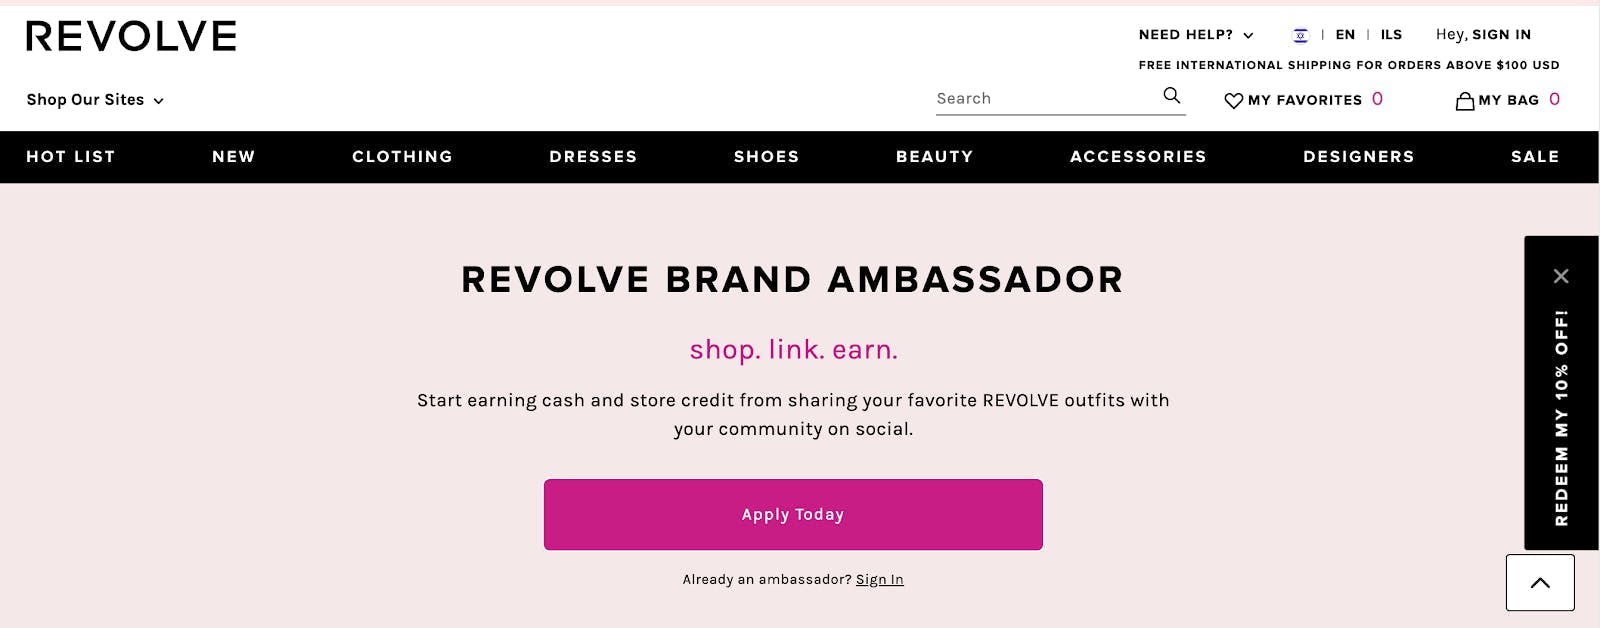 Capture d'écran du site internet REVOLVE qui recherche des ambassadeurs de marque